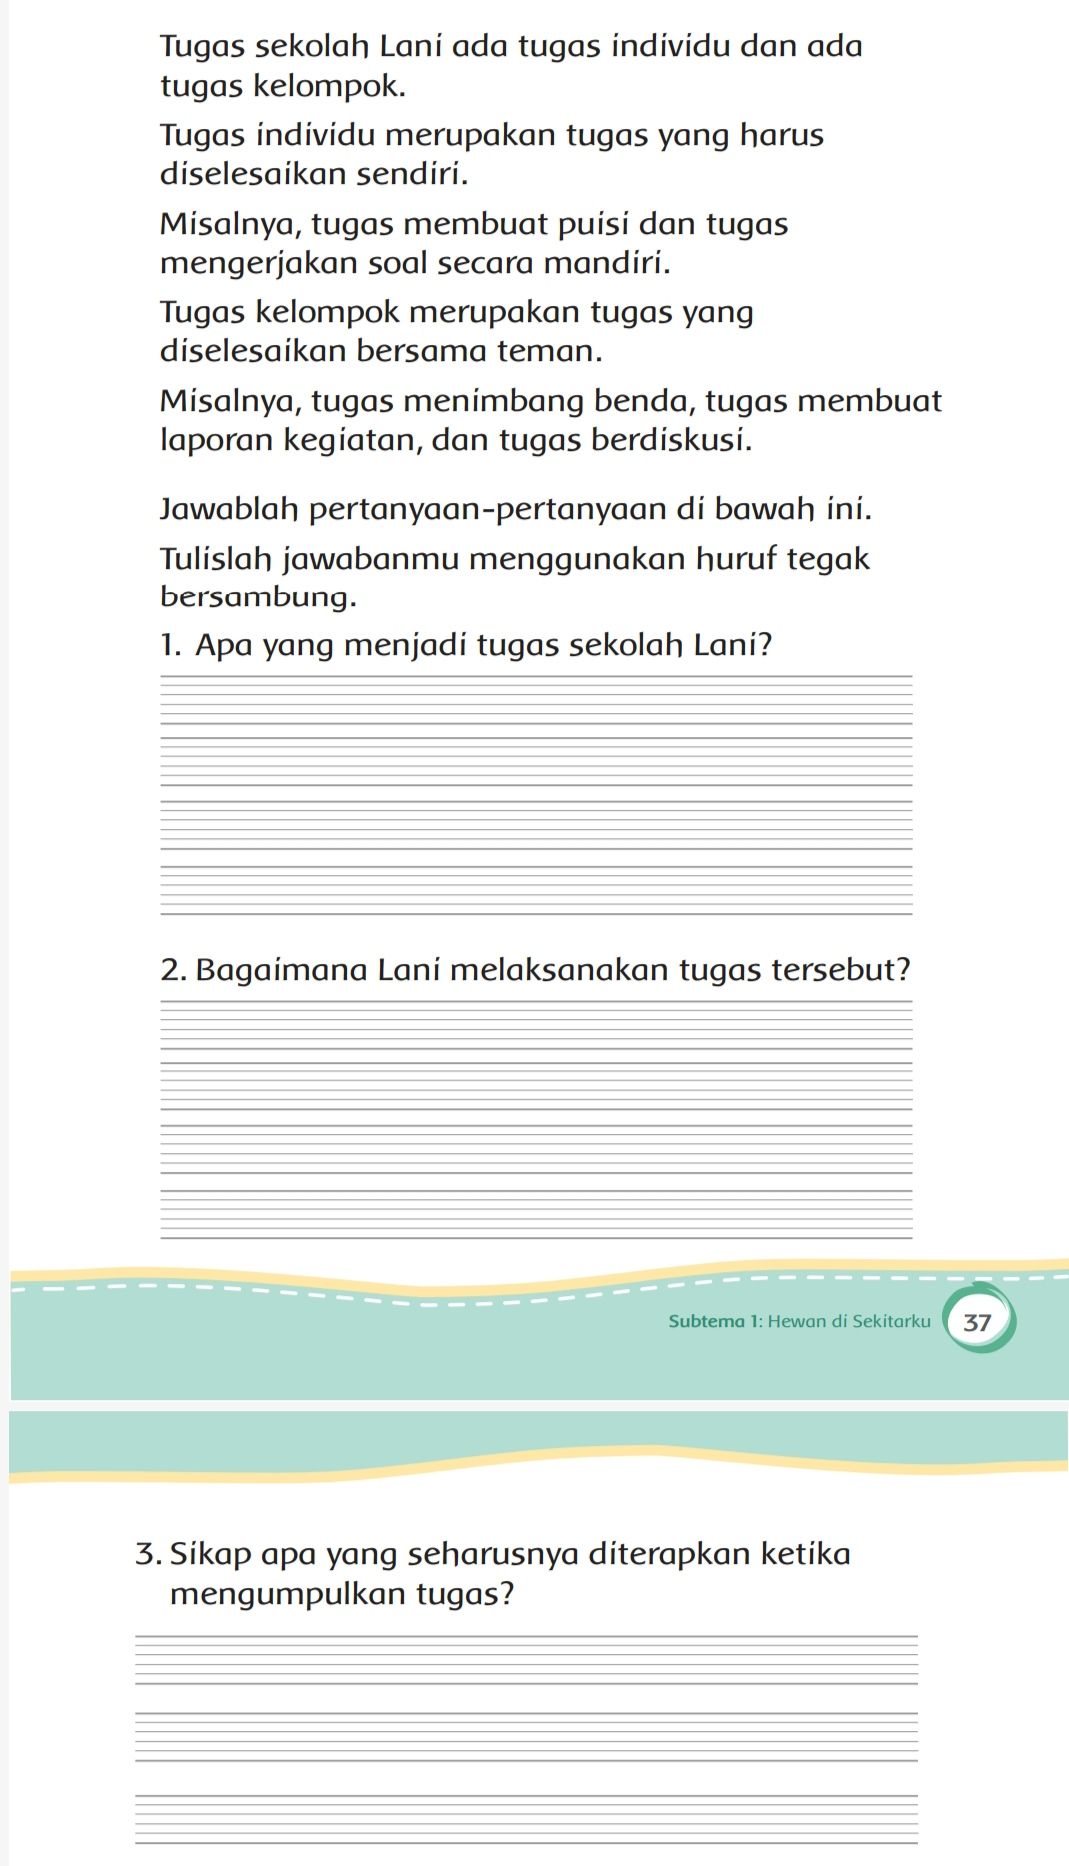 Tugas Individu Bahasa Indonesia Kelas 8 Hal 6 - View Tugas Individu Bahasa Indonesia Kelas 8 Halaman 6 Revisi Sekolah Pictures